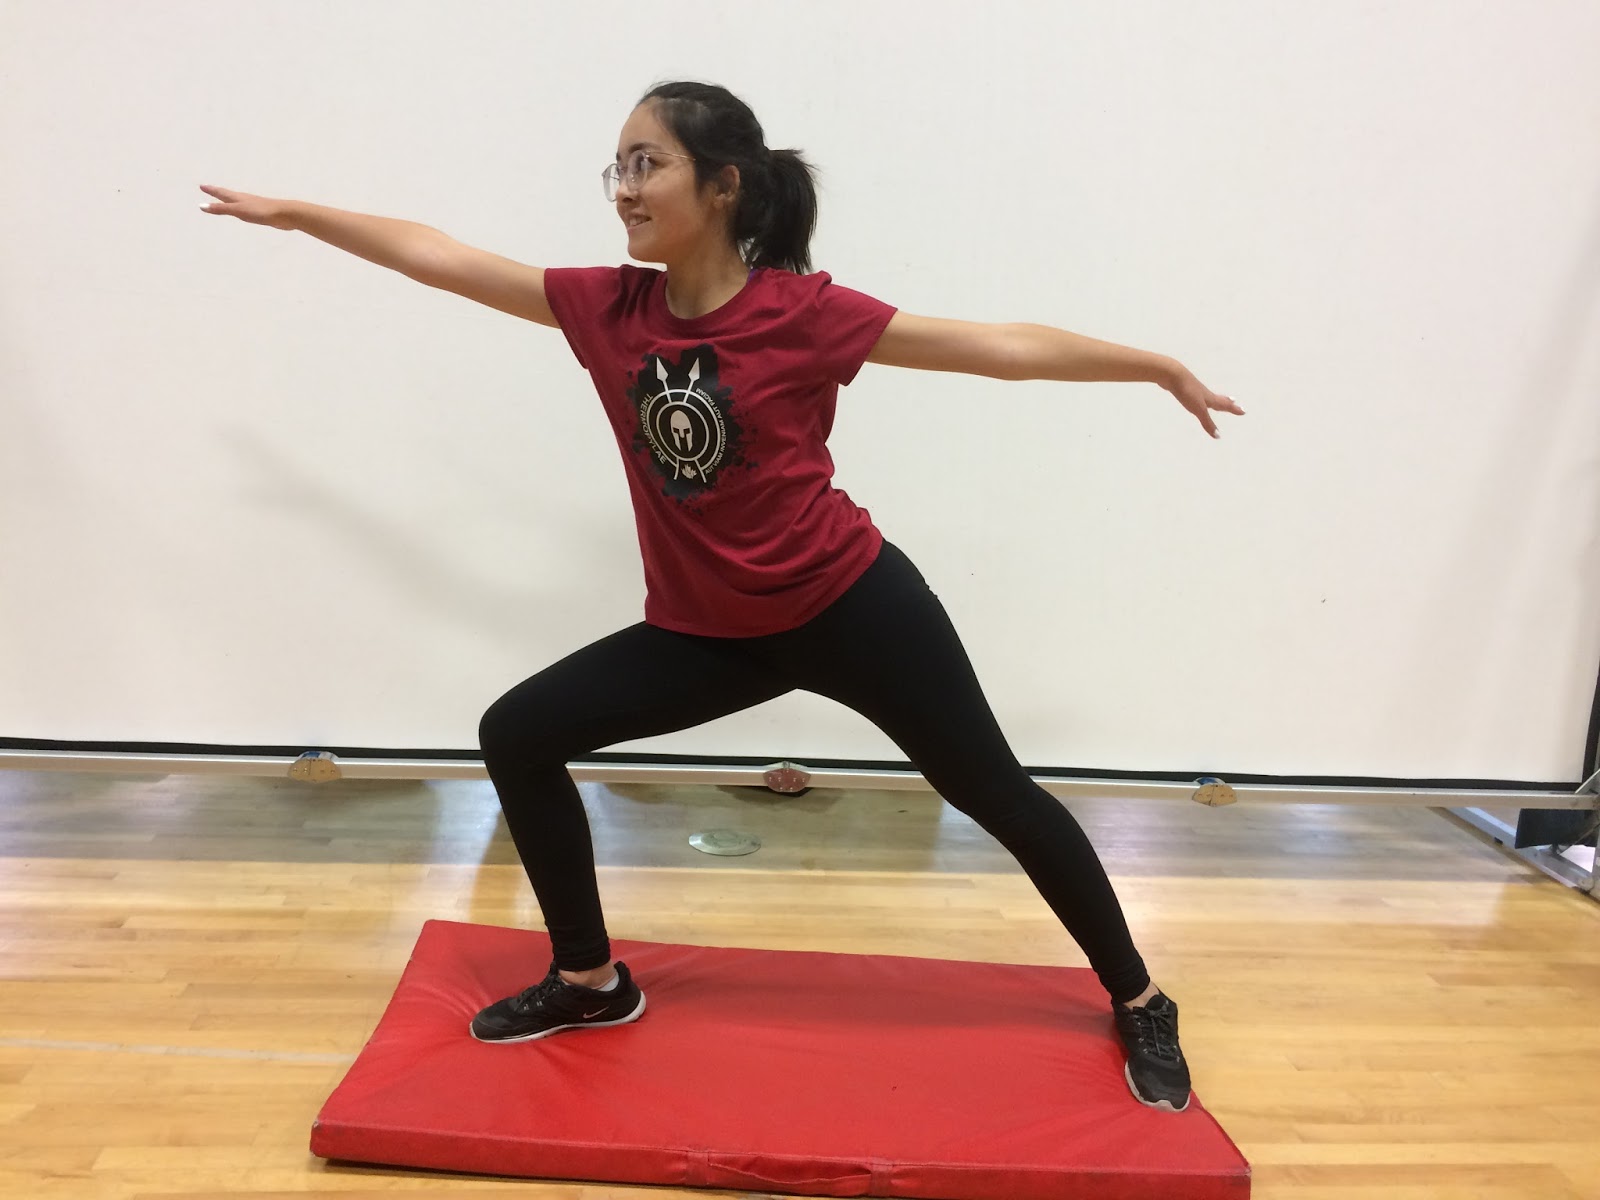 Thermopylae OCR: Yoga with Maya - December 22, 2017